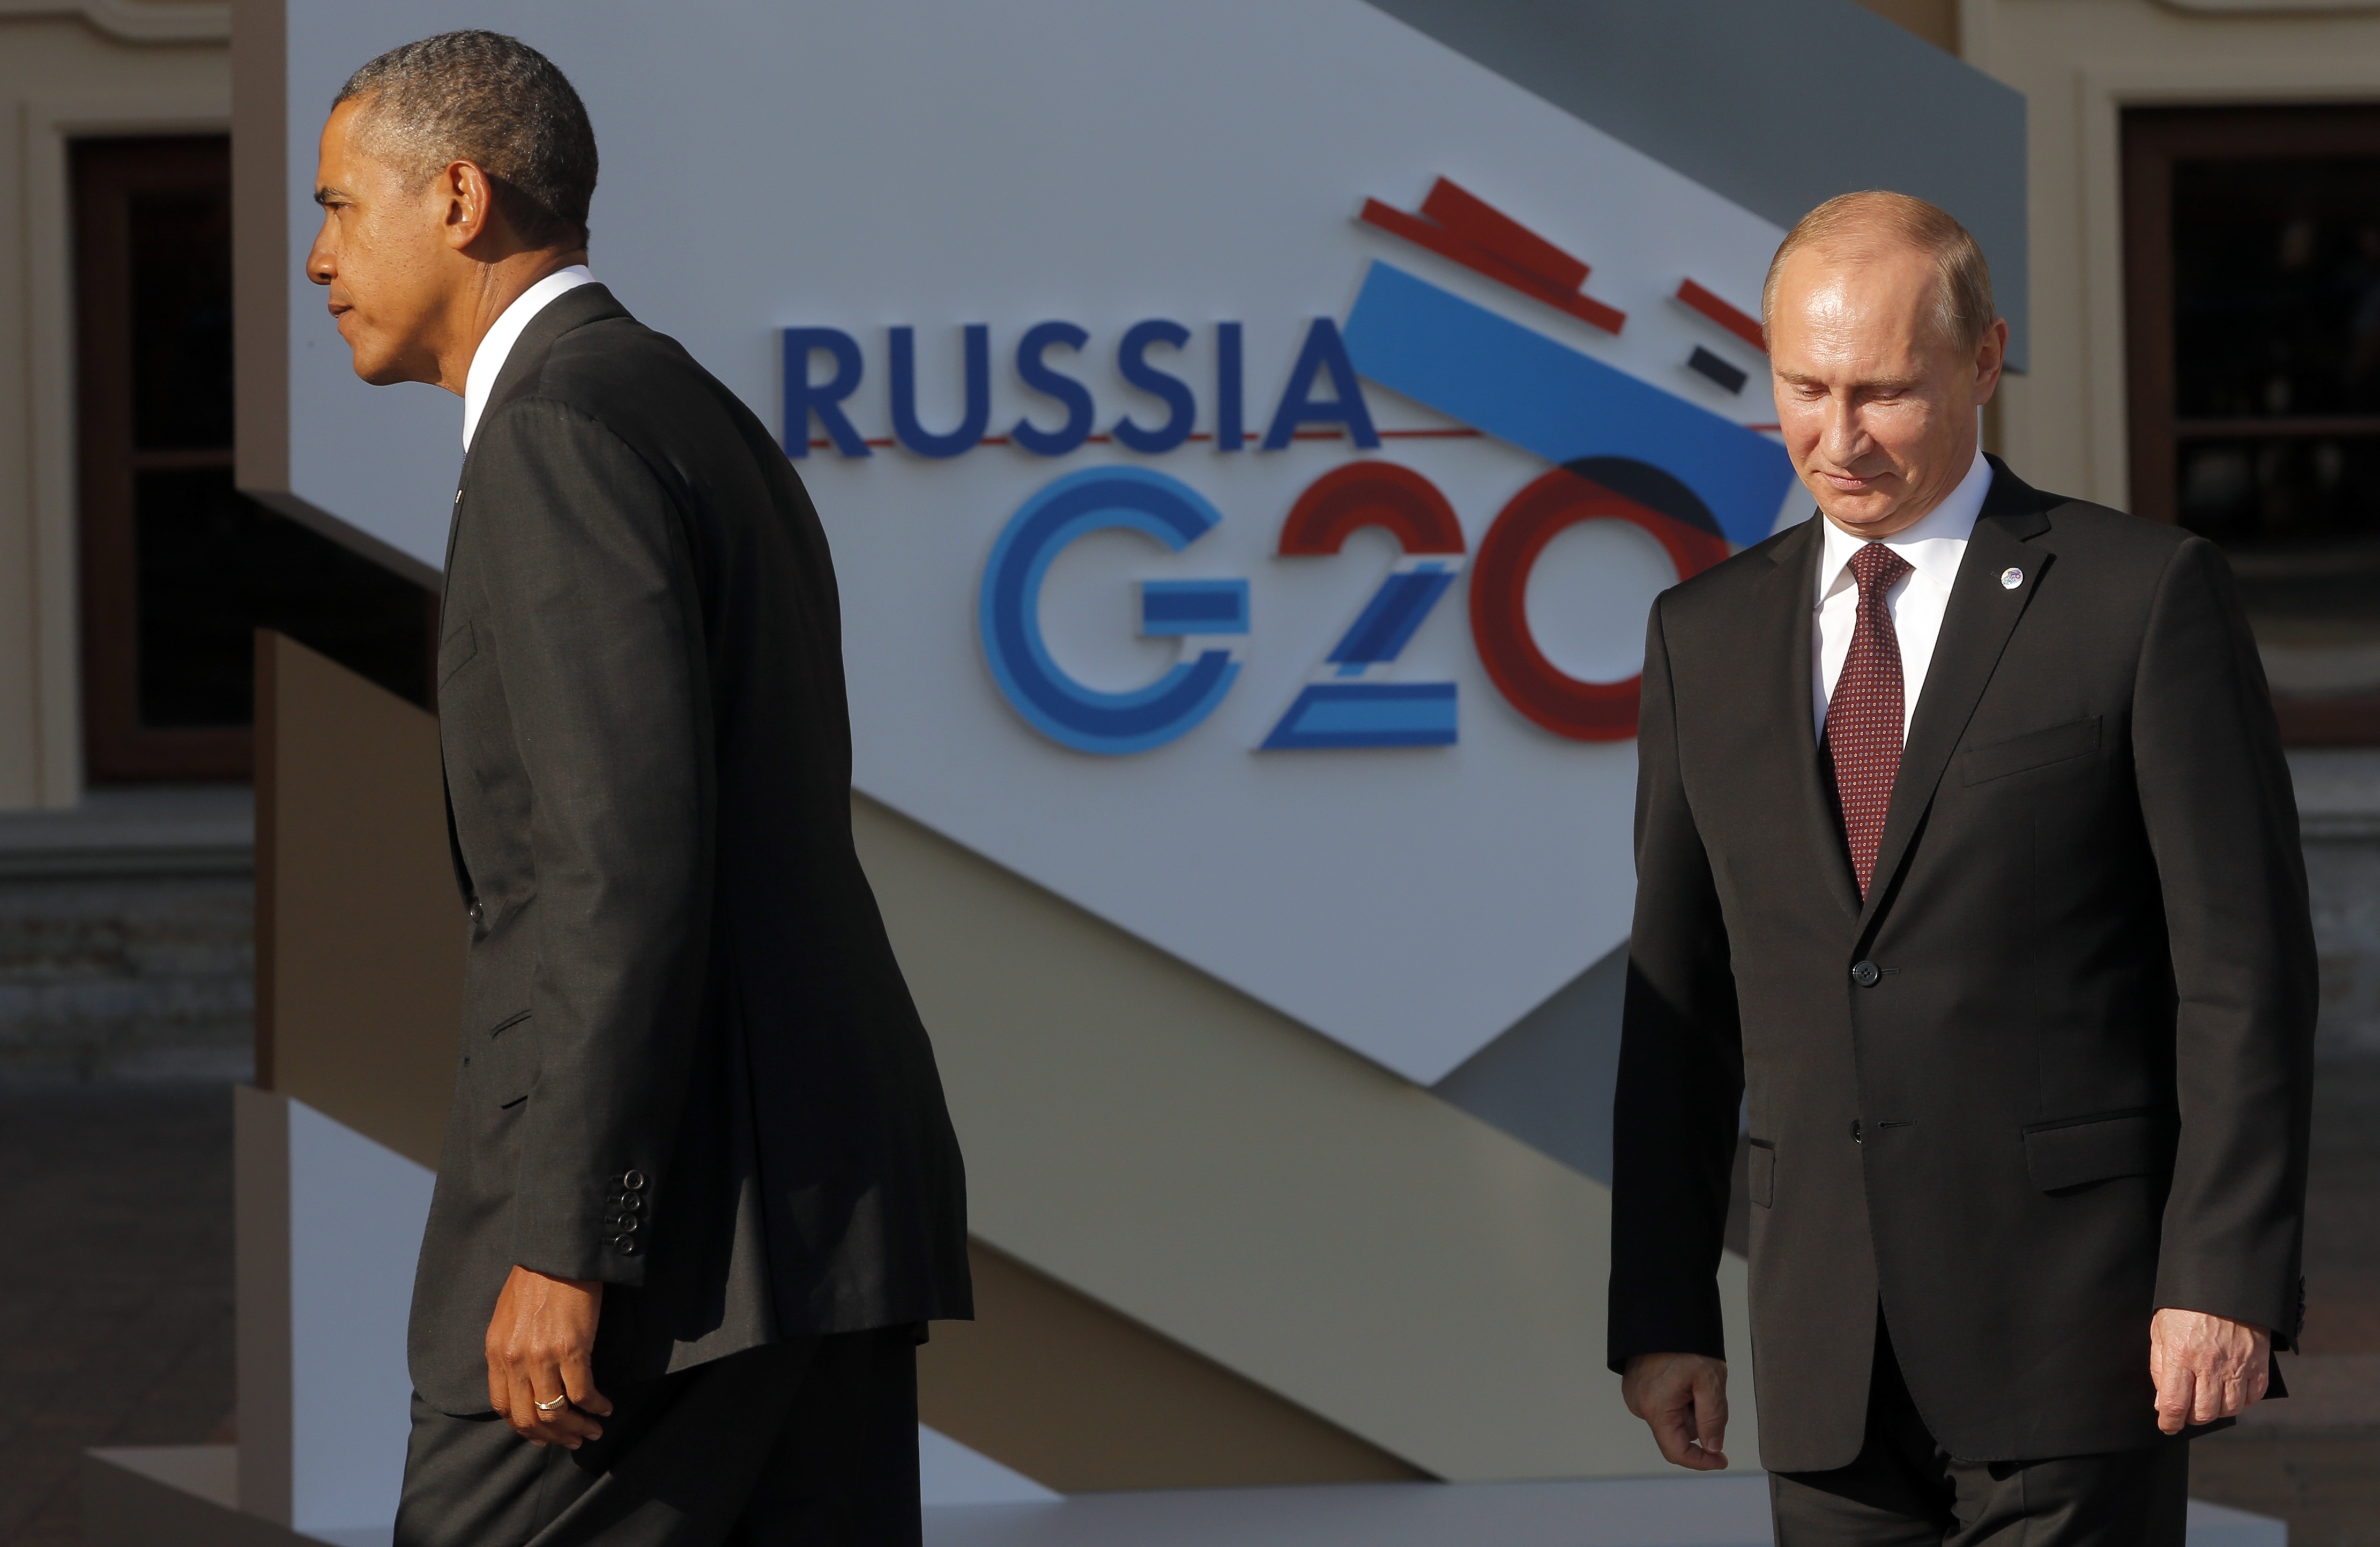 ΦΩΤΟ EUROKINISSI - Μπάρακ Ομπάμα και Βλαντιμίρ Πούτιν στη Σύνοδο G20